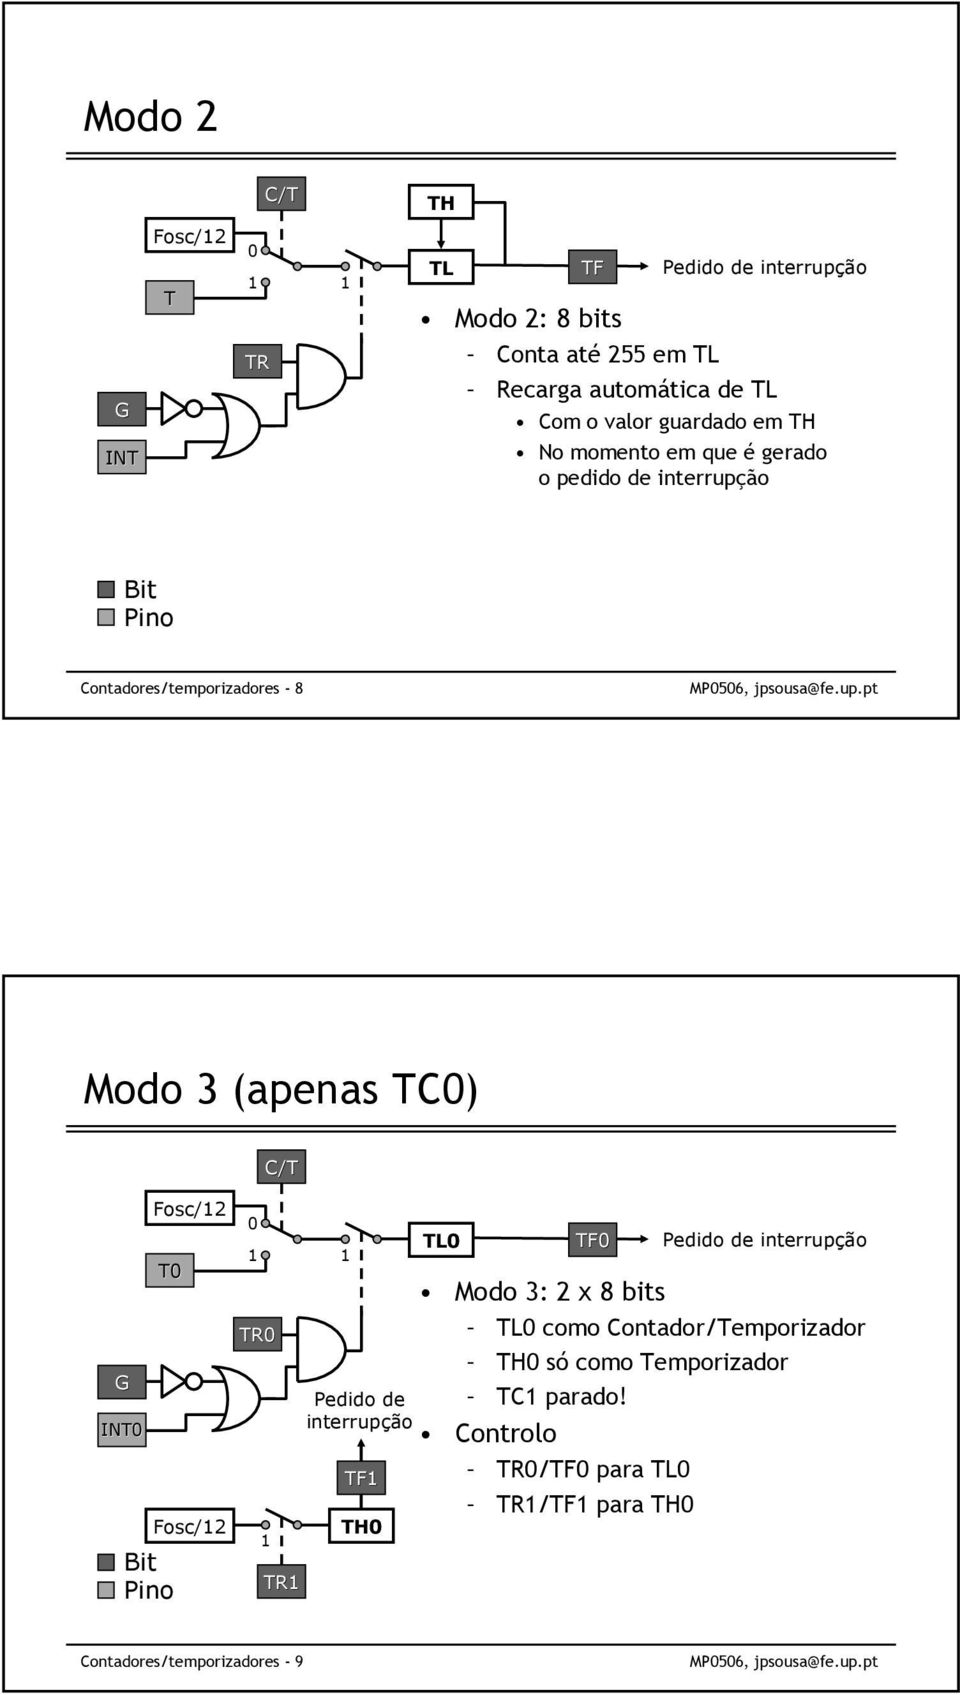 INT0 T0 Bit Pino Fosc/12 Fosc/12 TR0 C/T 0 1 1 1 TR1 Pedido de interrupção TF1 TH0 TL0 TF0 Pedido de interrupção Modo 3: 2 x 8 bits